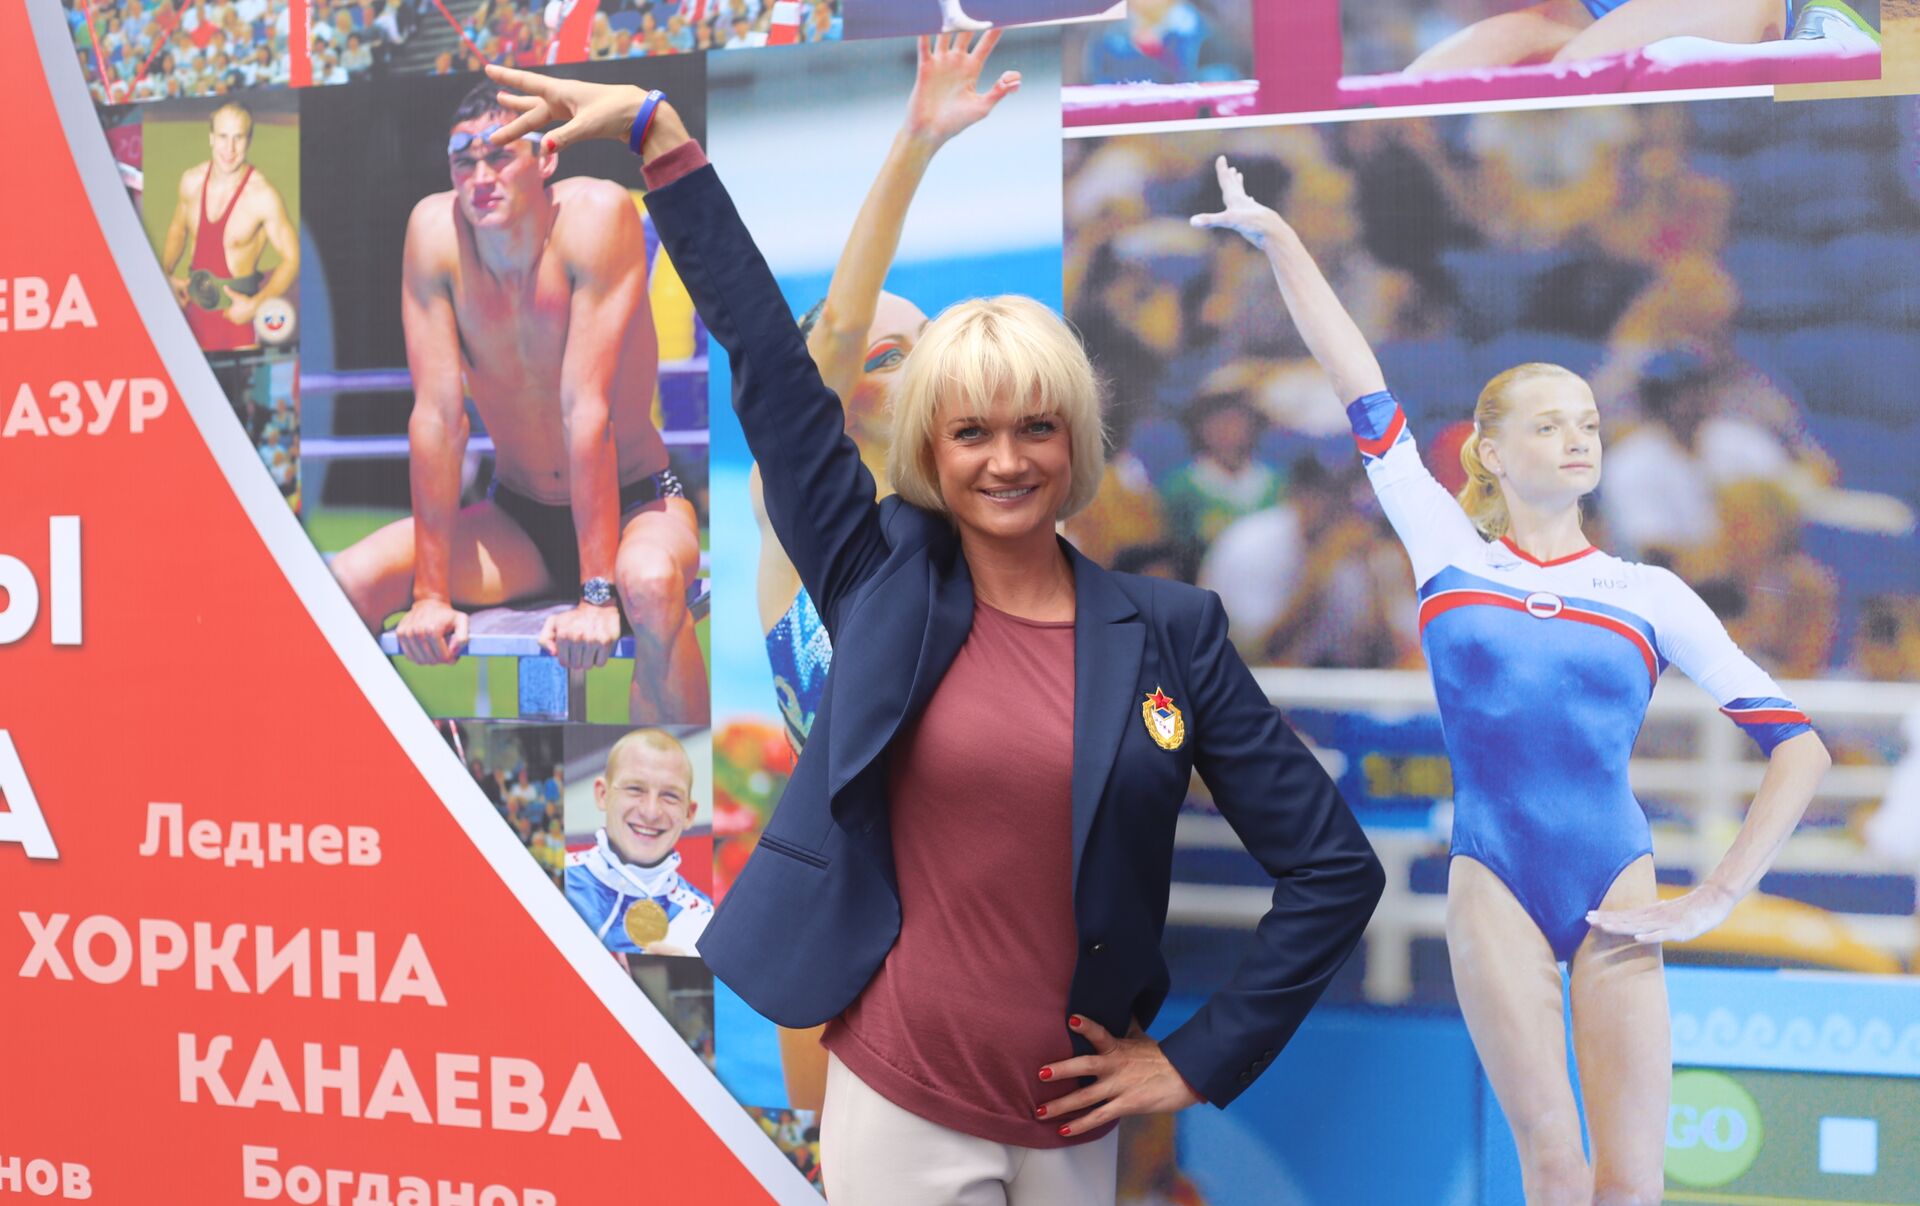 Exclusivo: lenda da ginástica russa faz duras críticas à IAAF por excluir  atletas - 10.08.2016, Sputnik Brasil